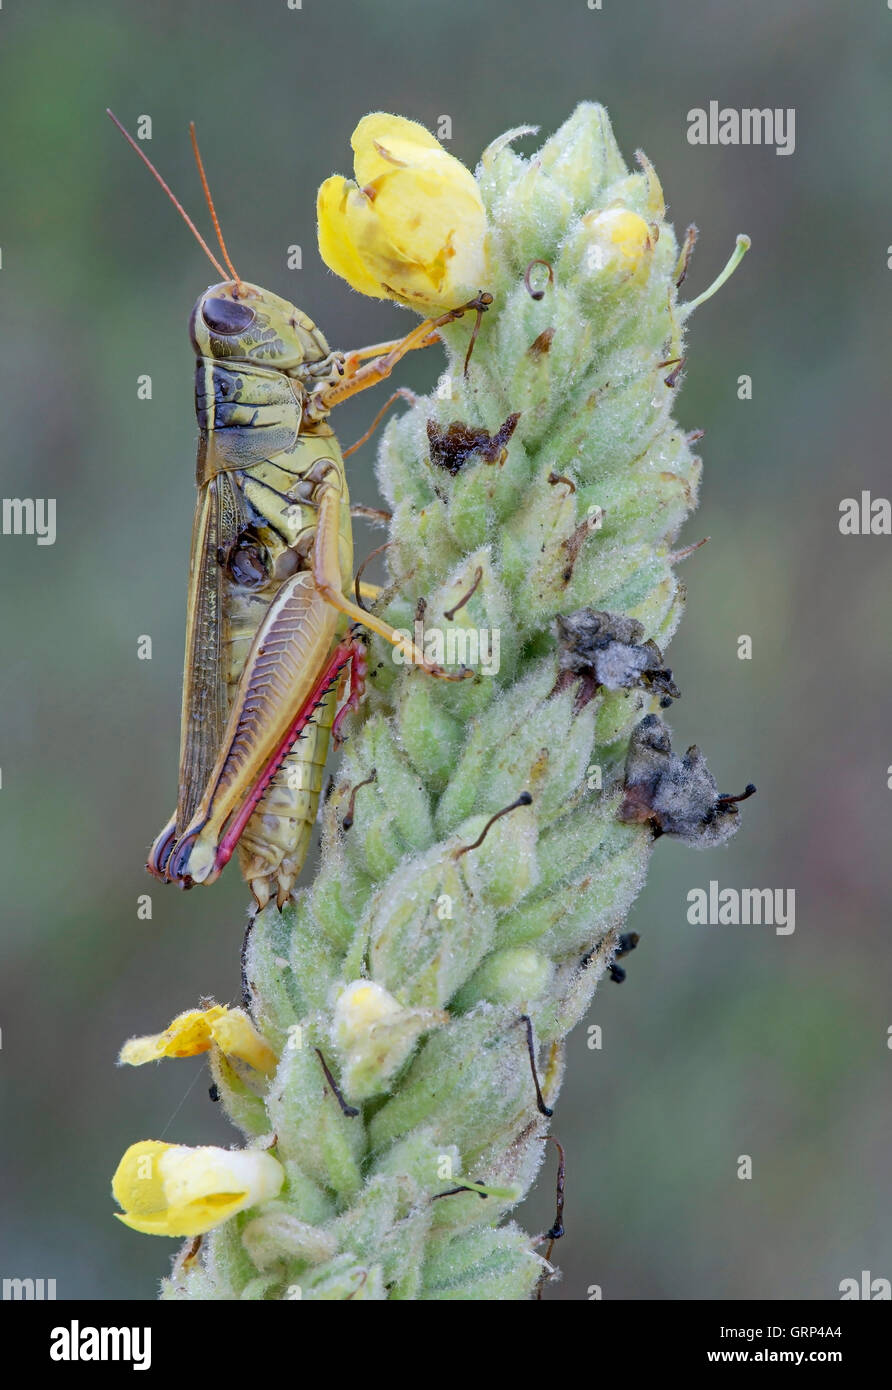 Zweistreifiger Grasshopper (Melanoplus bivittatus) auf der Gemeinen Mullein-Pflanze (Verbascum thapsus), E USA, von Skip Moody/Dembinsky Photo Assoc Stockfoto